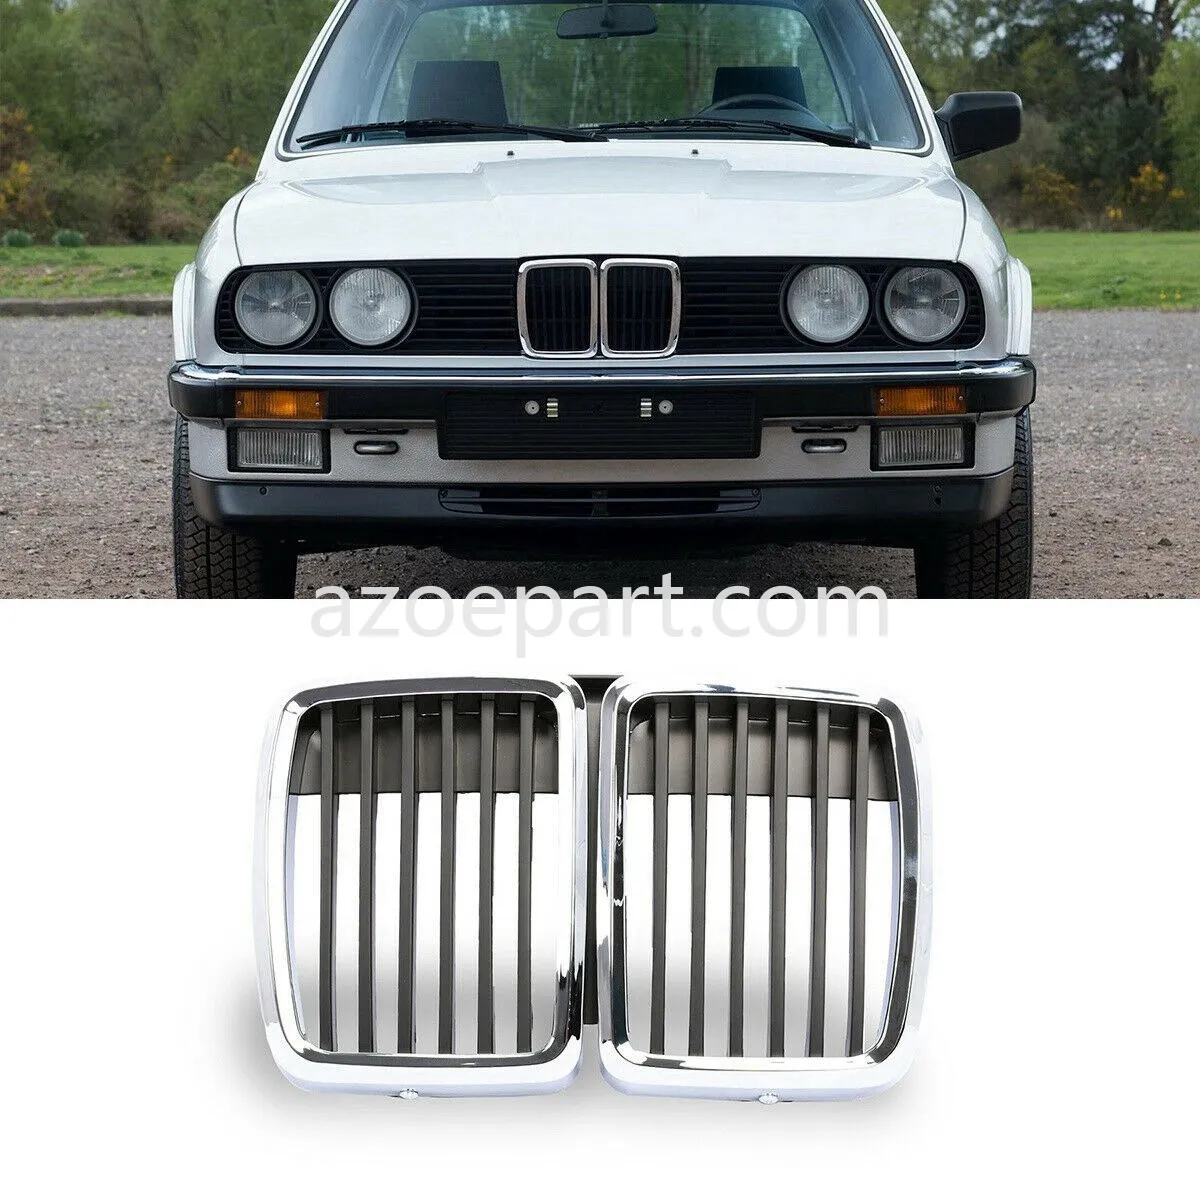 Центральная решетка радиатора переднего капота, черный цвет для BMW E30 M3 3 серии 1982-1991 гг. Изображение 2